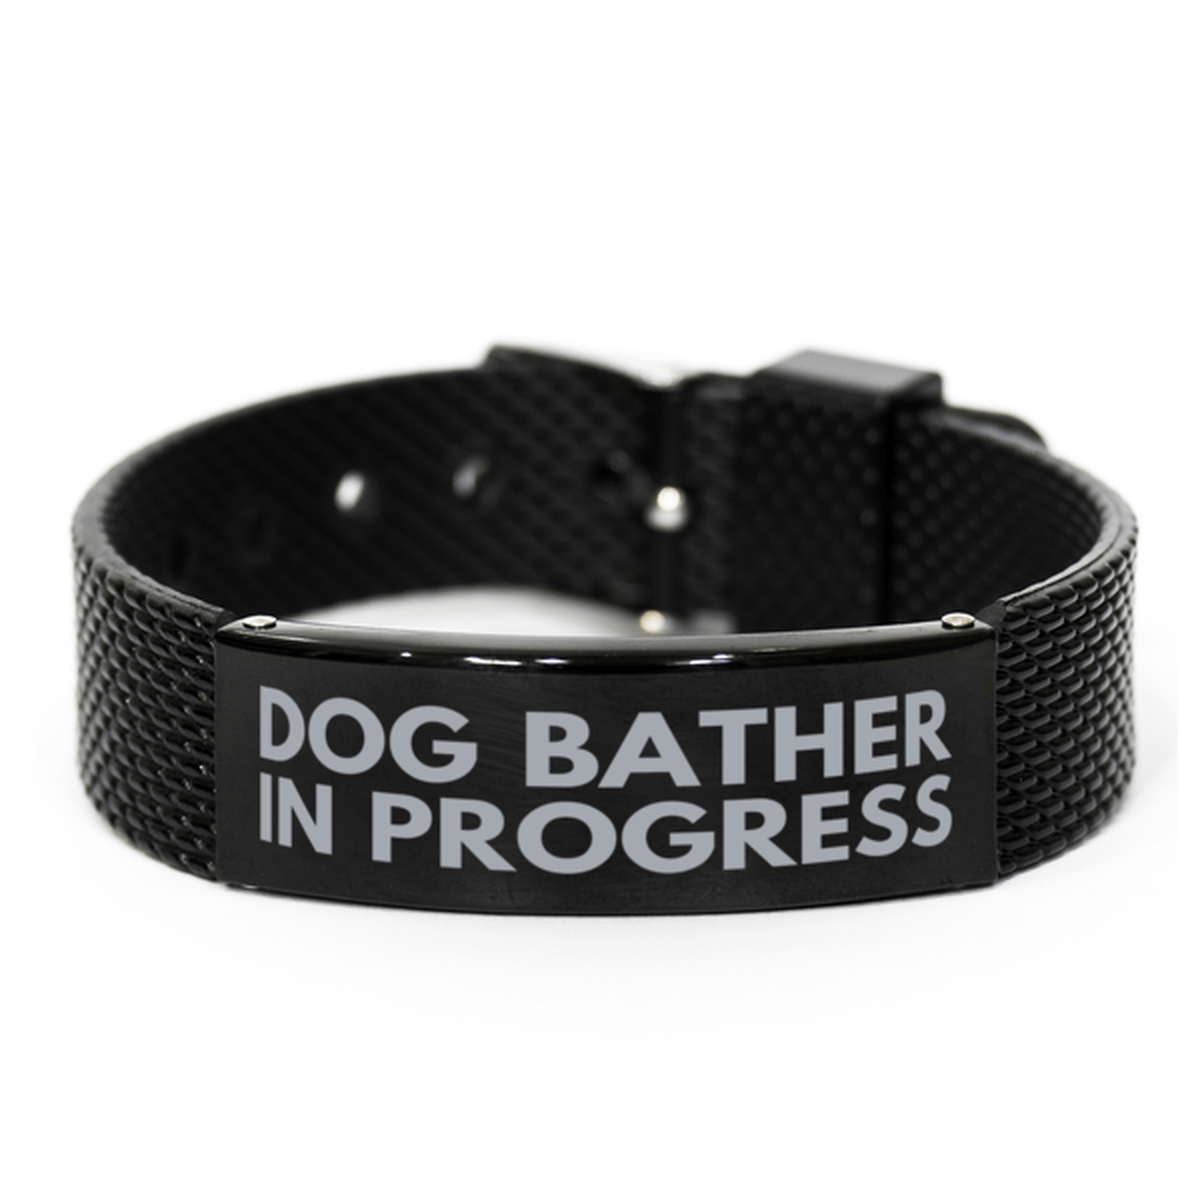 Inspirational Dog Bather Black Shark Mesh Bracelet, Dog Bather In Progress, Best Graduation Gifts for Students